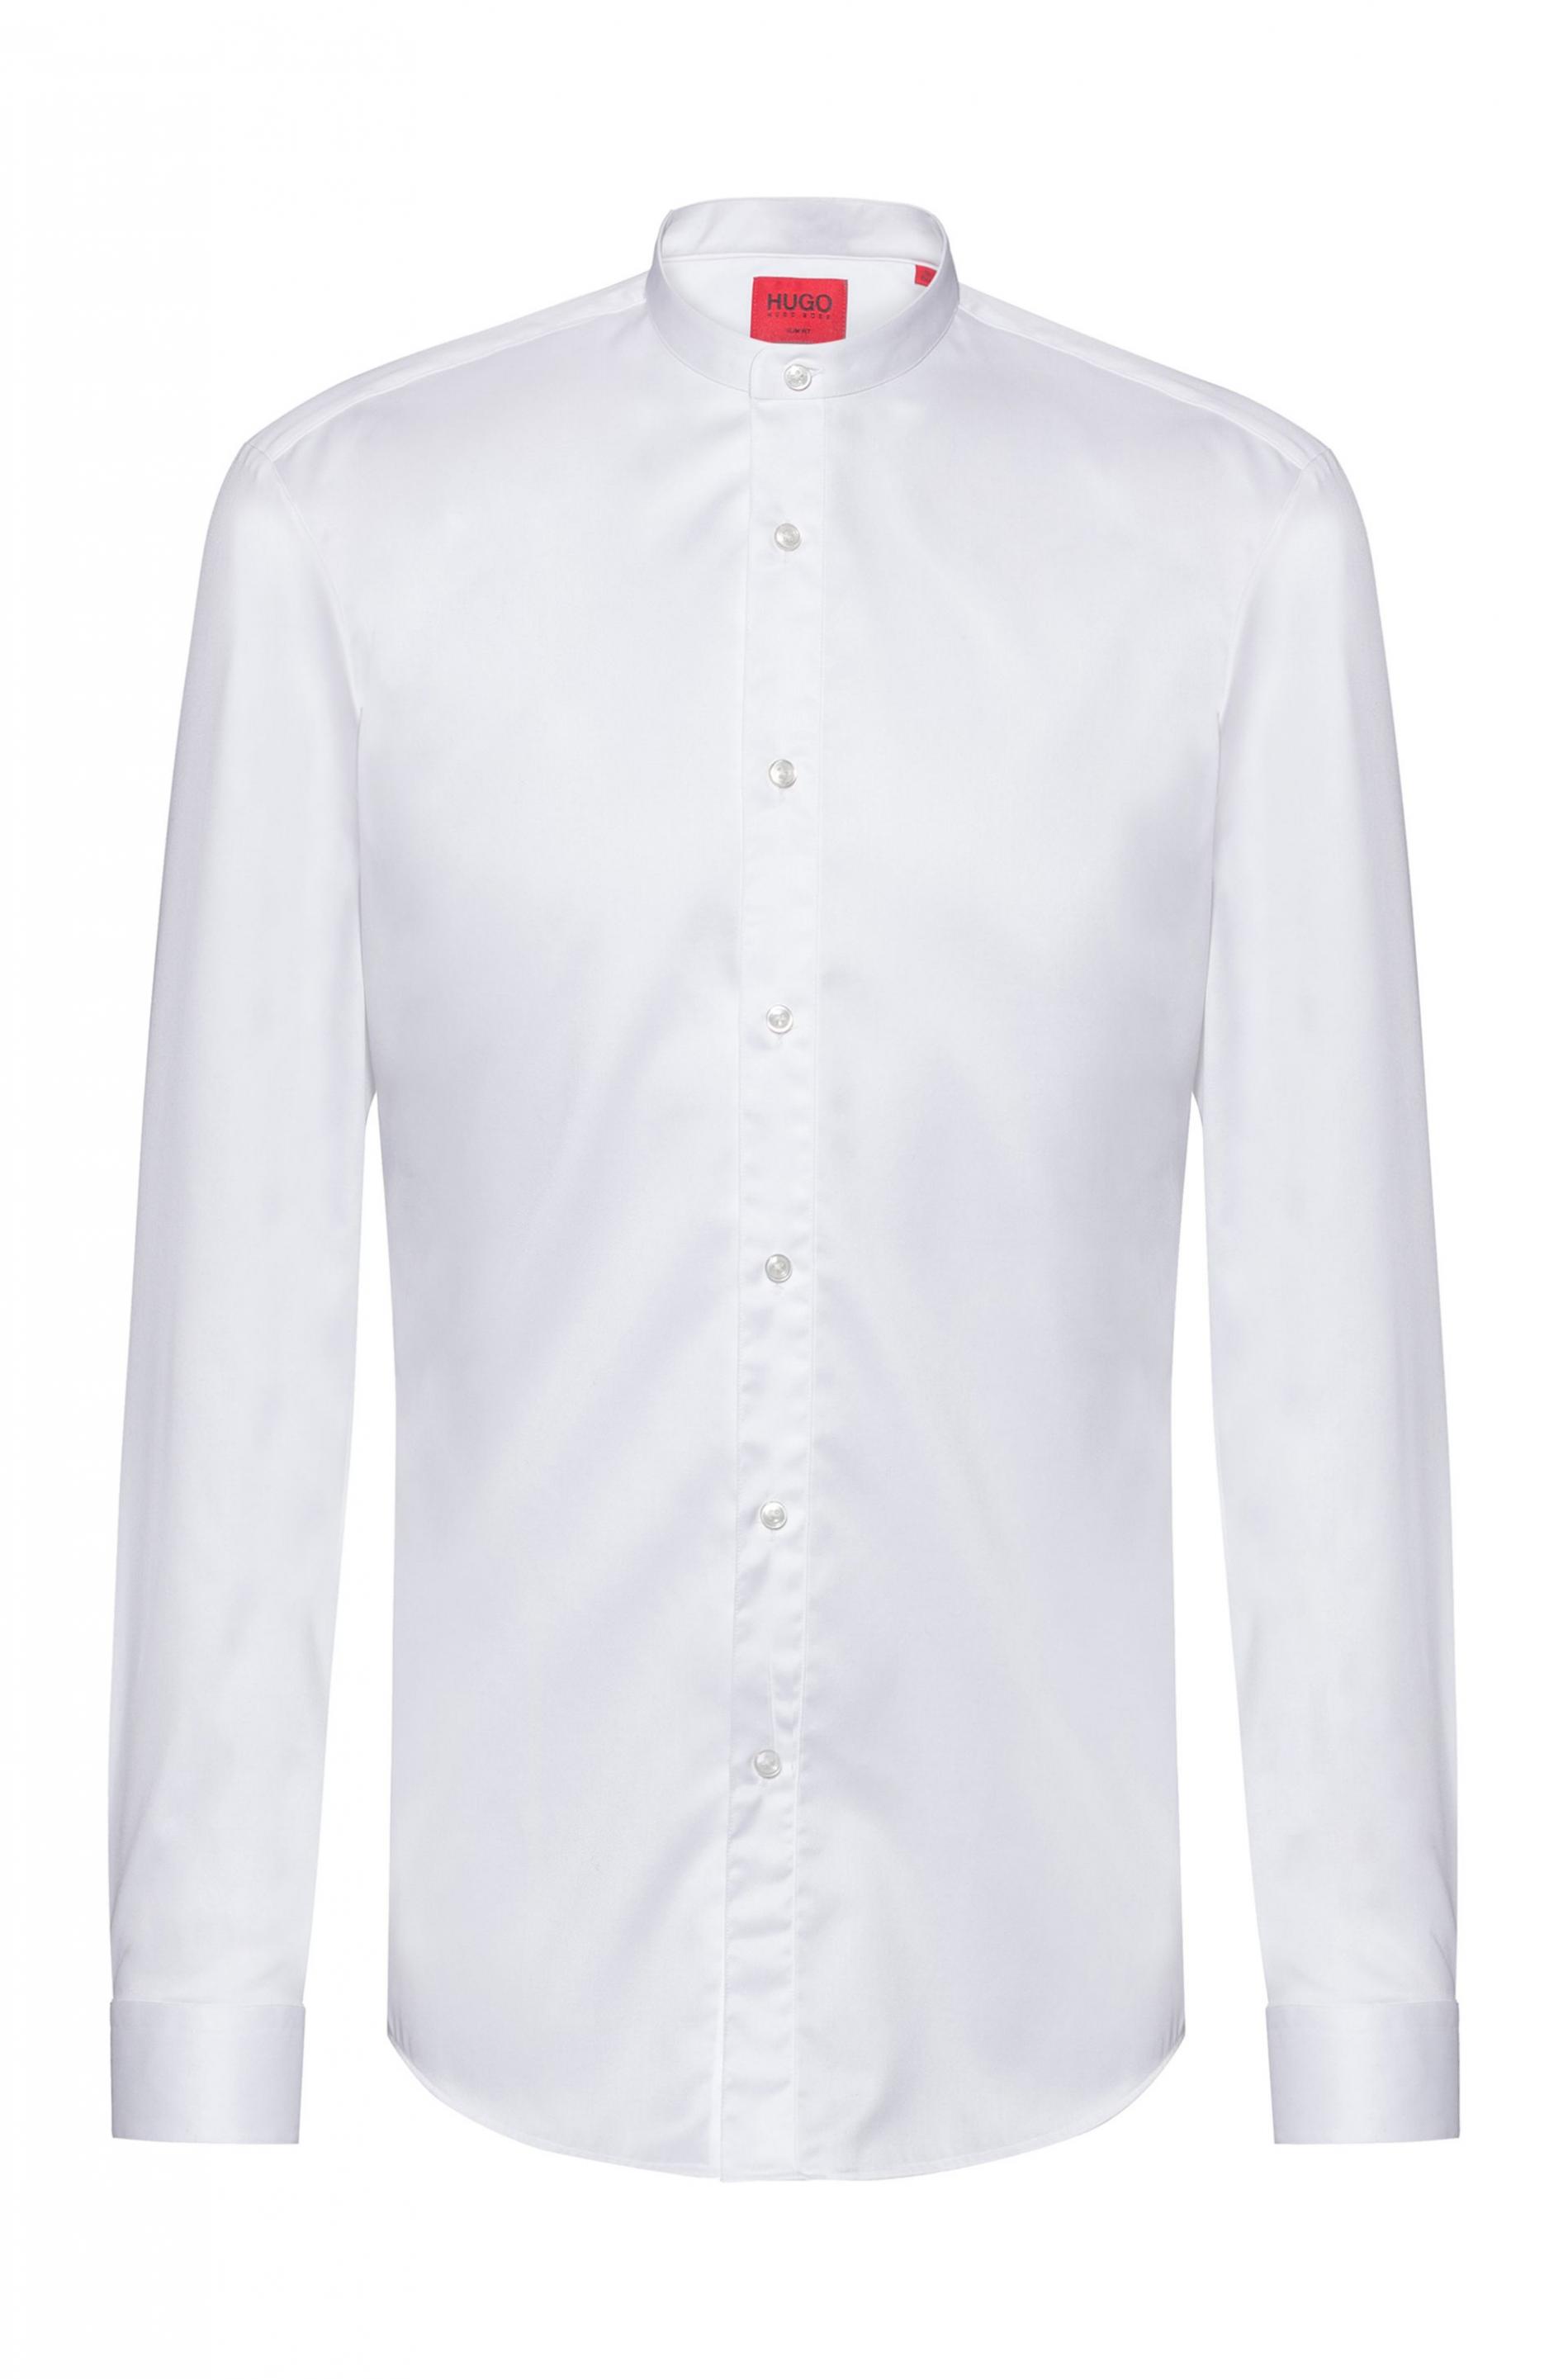 Chemise Slim Fit en twill de coton facile à repasser Coton BOSS by HUGO BOSS pour homme en coloris Blanc Homme Vêtements Chemises Chemises habillées 